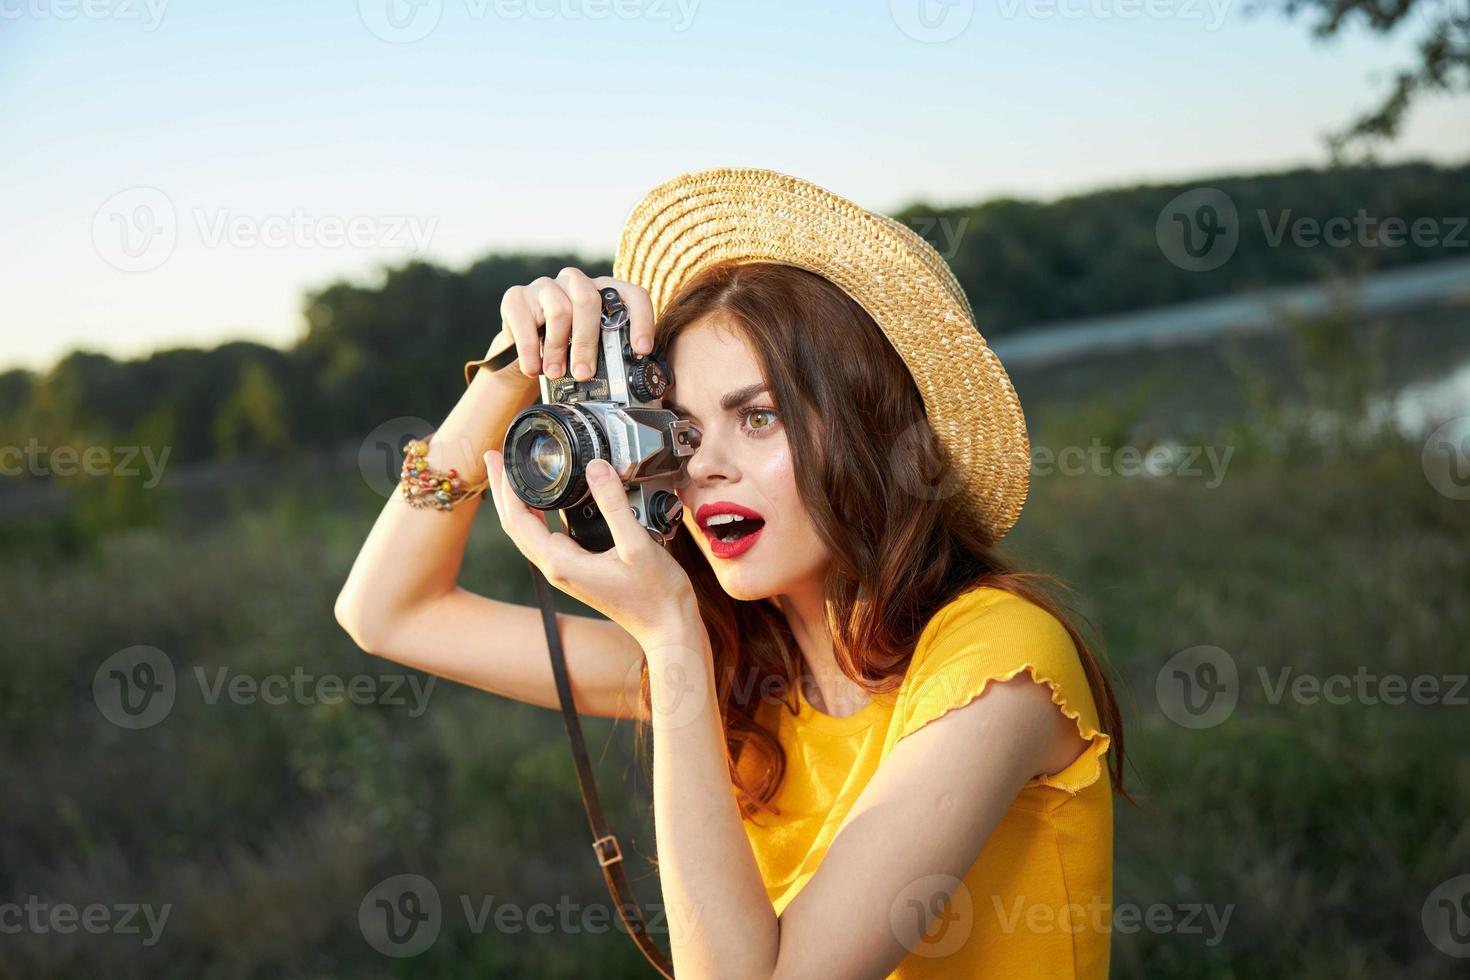 överraskad kvinna ser in i de kamera lins trevlig skott natur foto